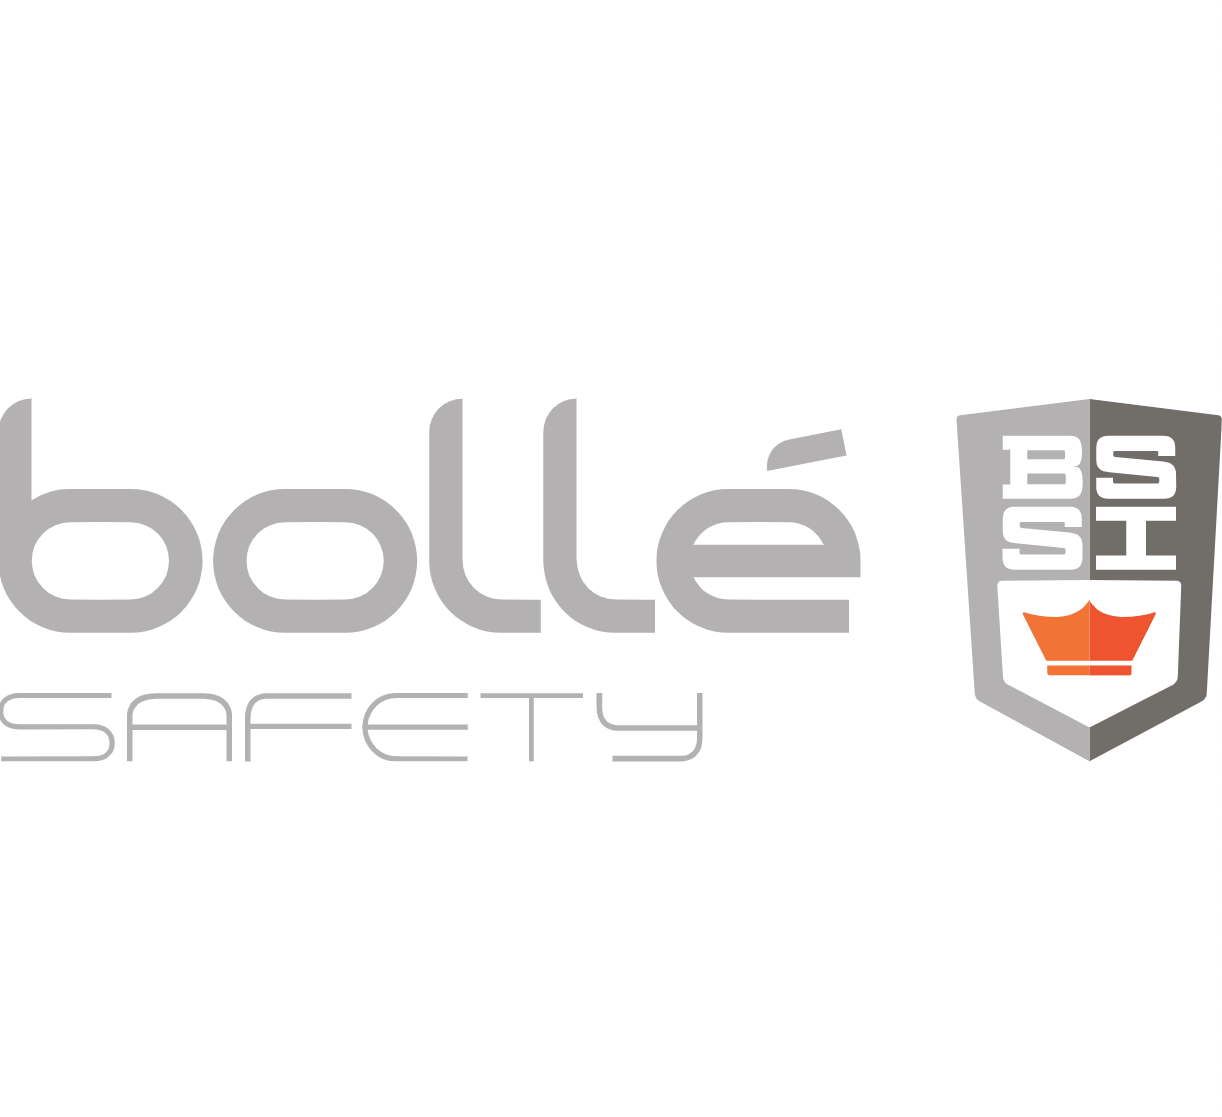 Bollé Safety SI X500 Clear ballistic goggle